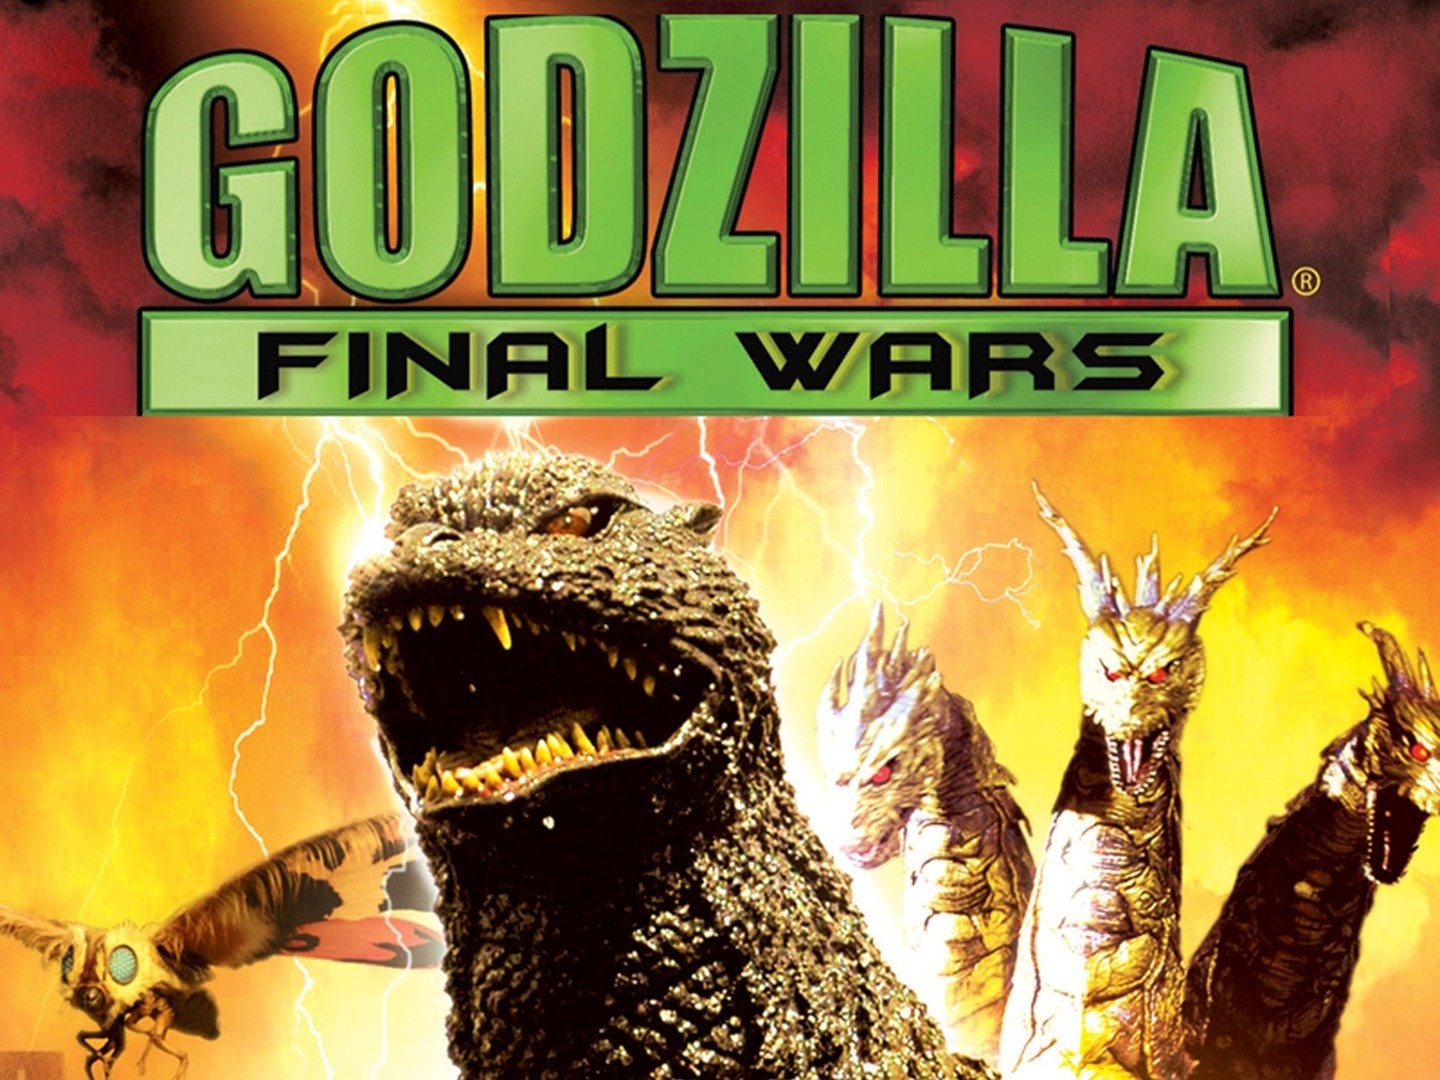 Godzilla Final Wars Wallpaper I did  rGODZILLA